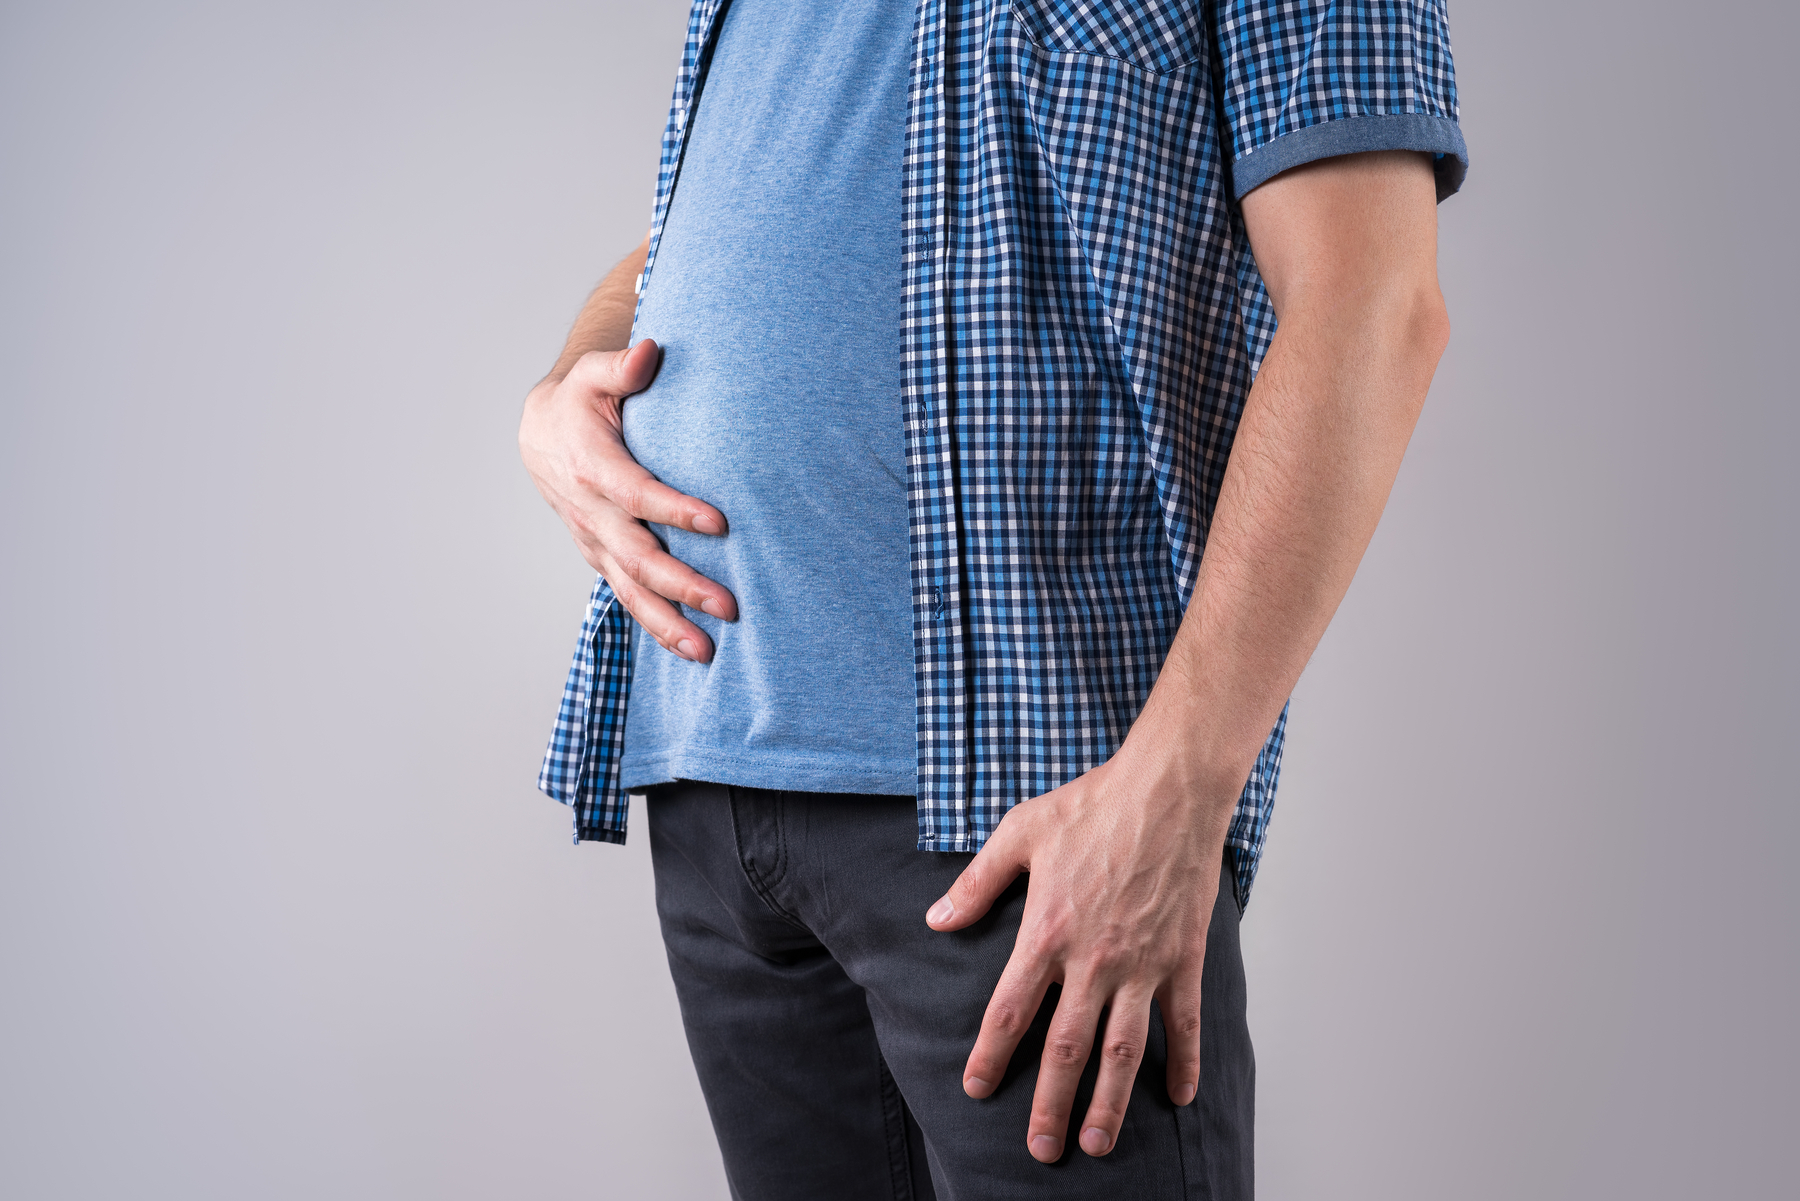 Distensión abdominal o vientre hinchado: ¿cómo tratarlo?